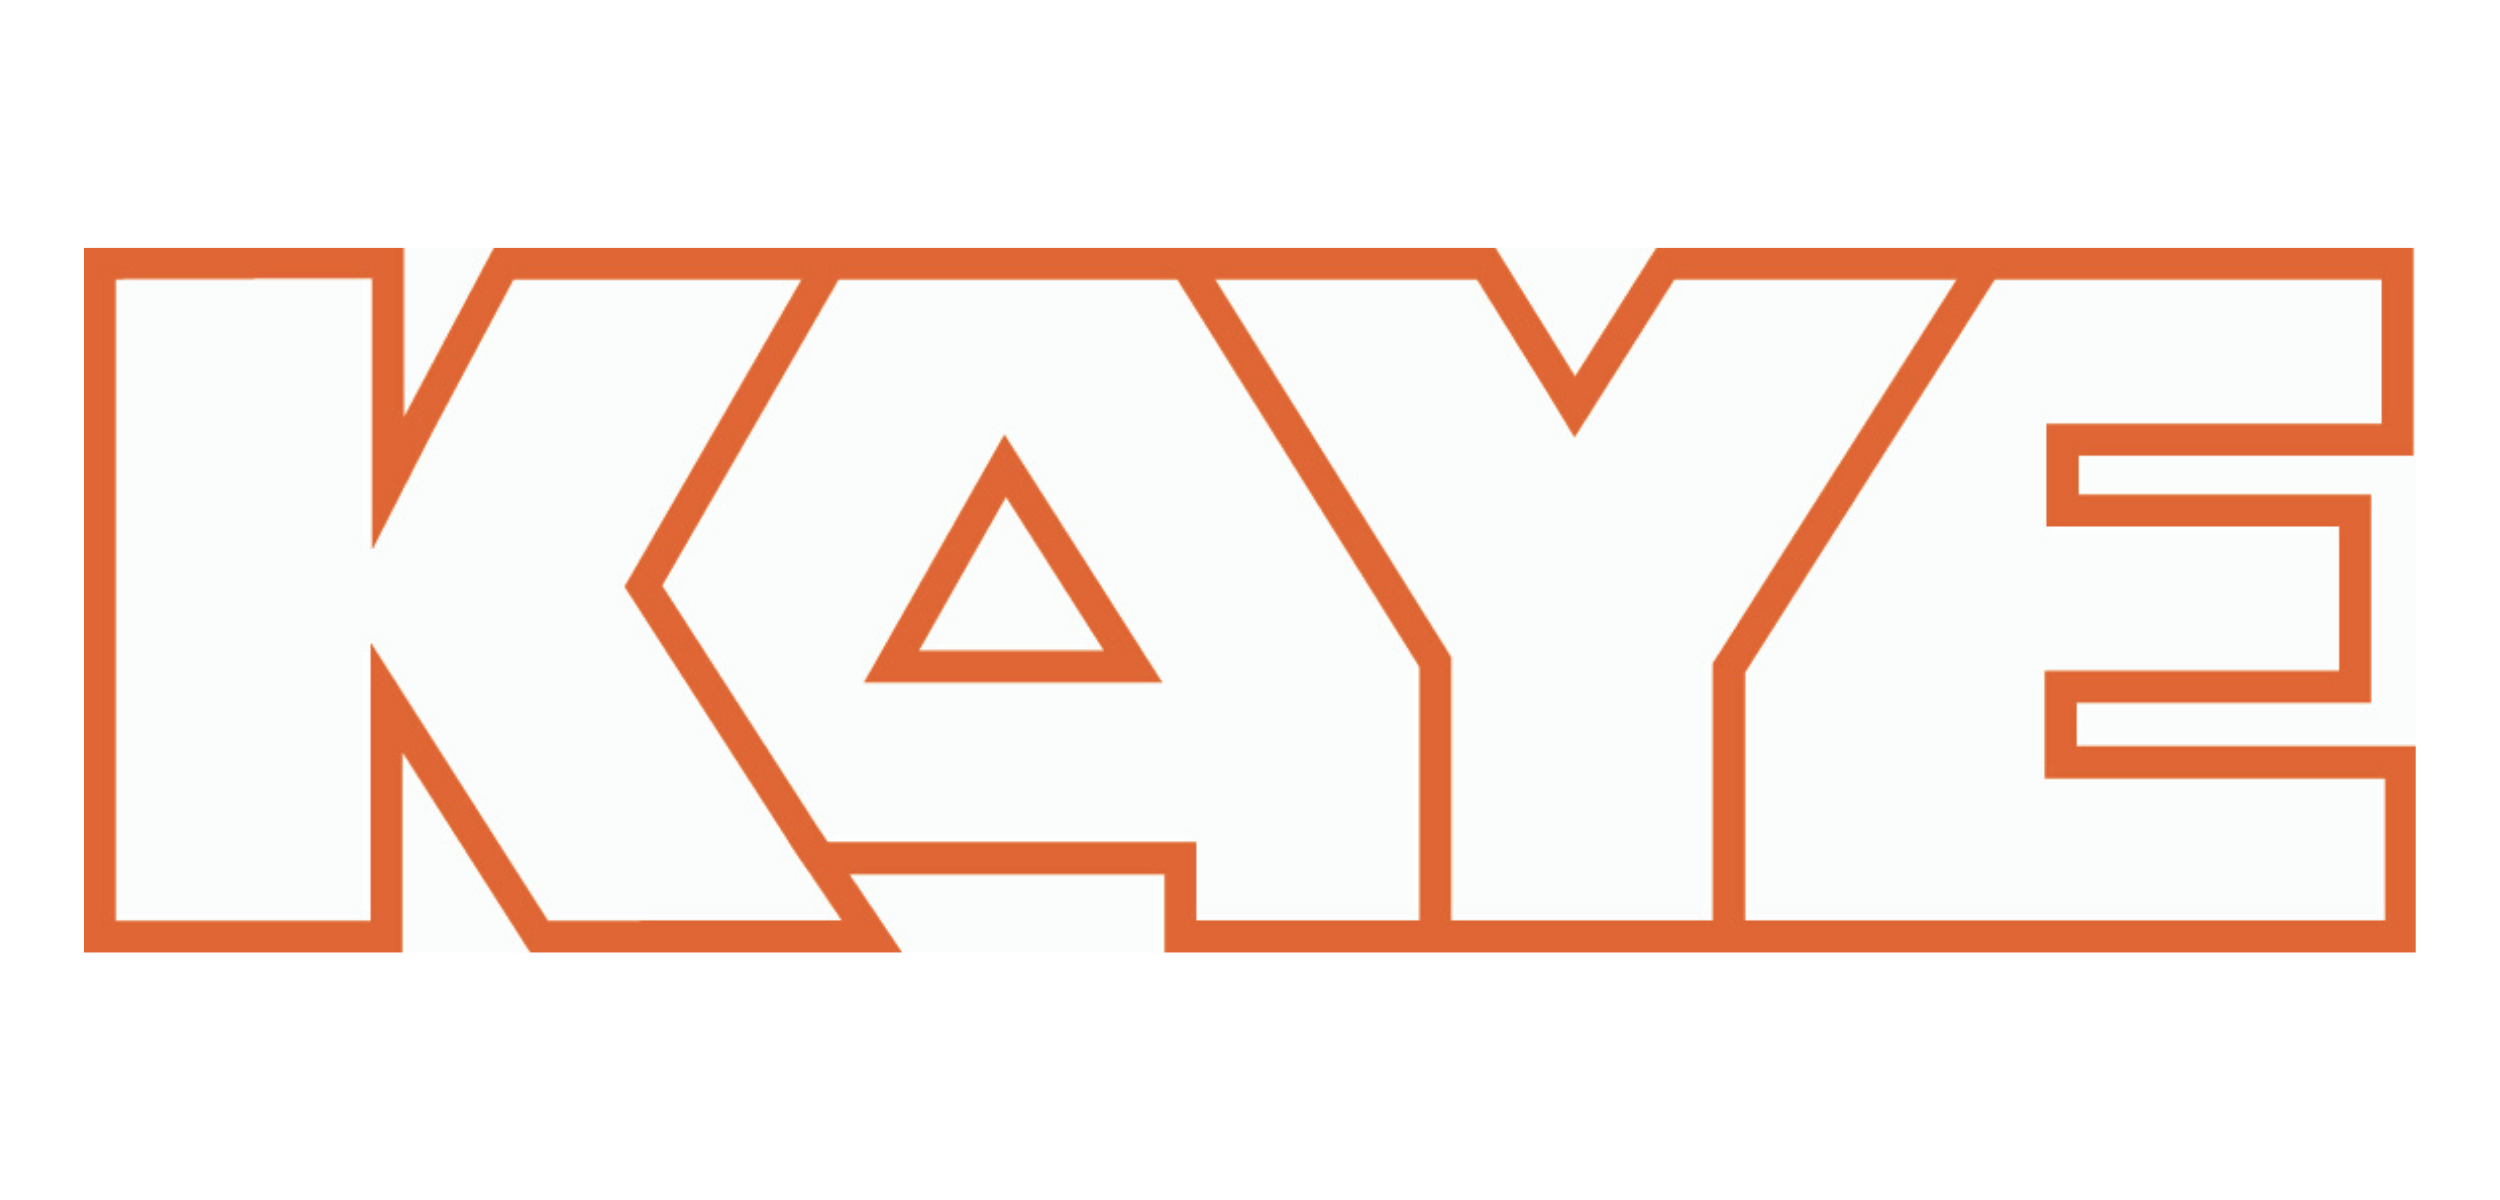 Kaye logo